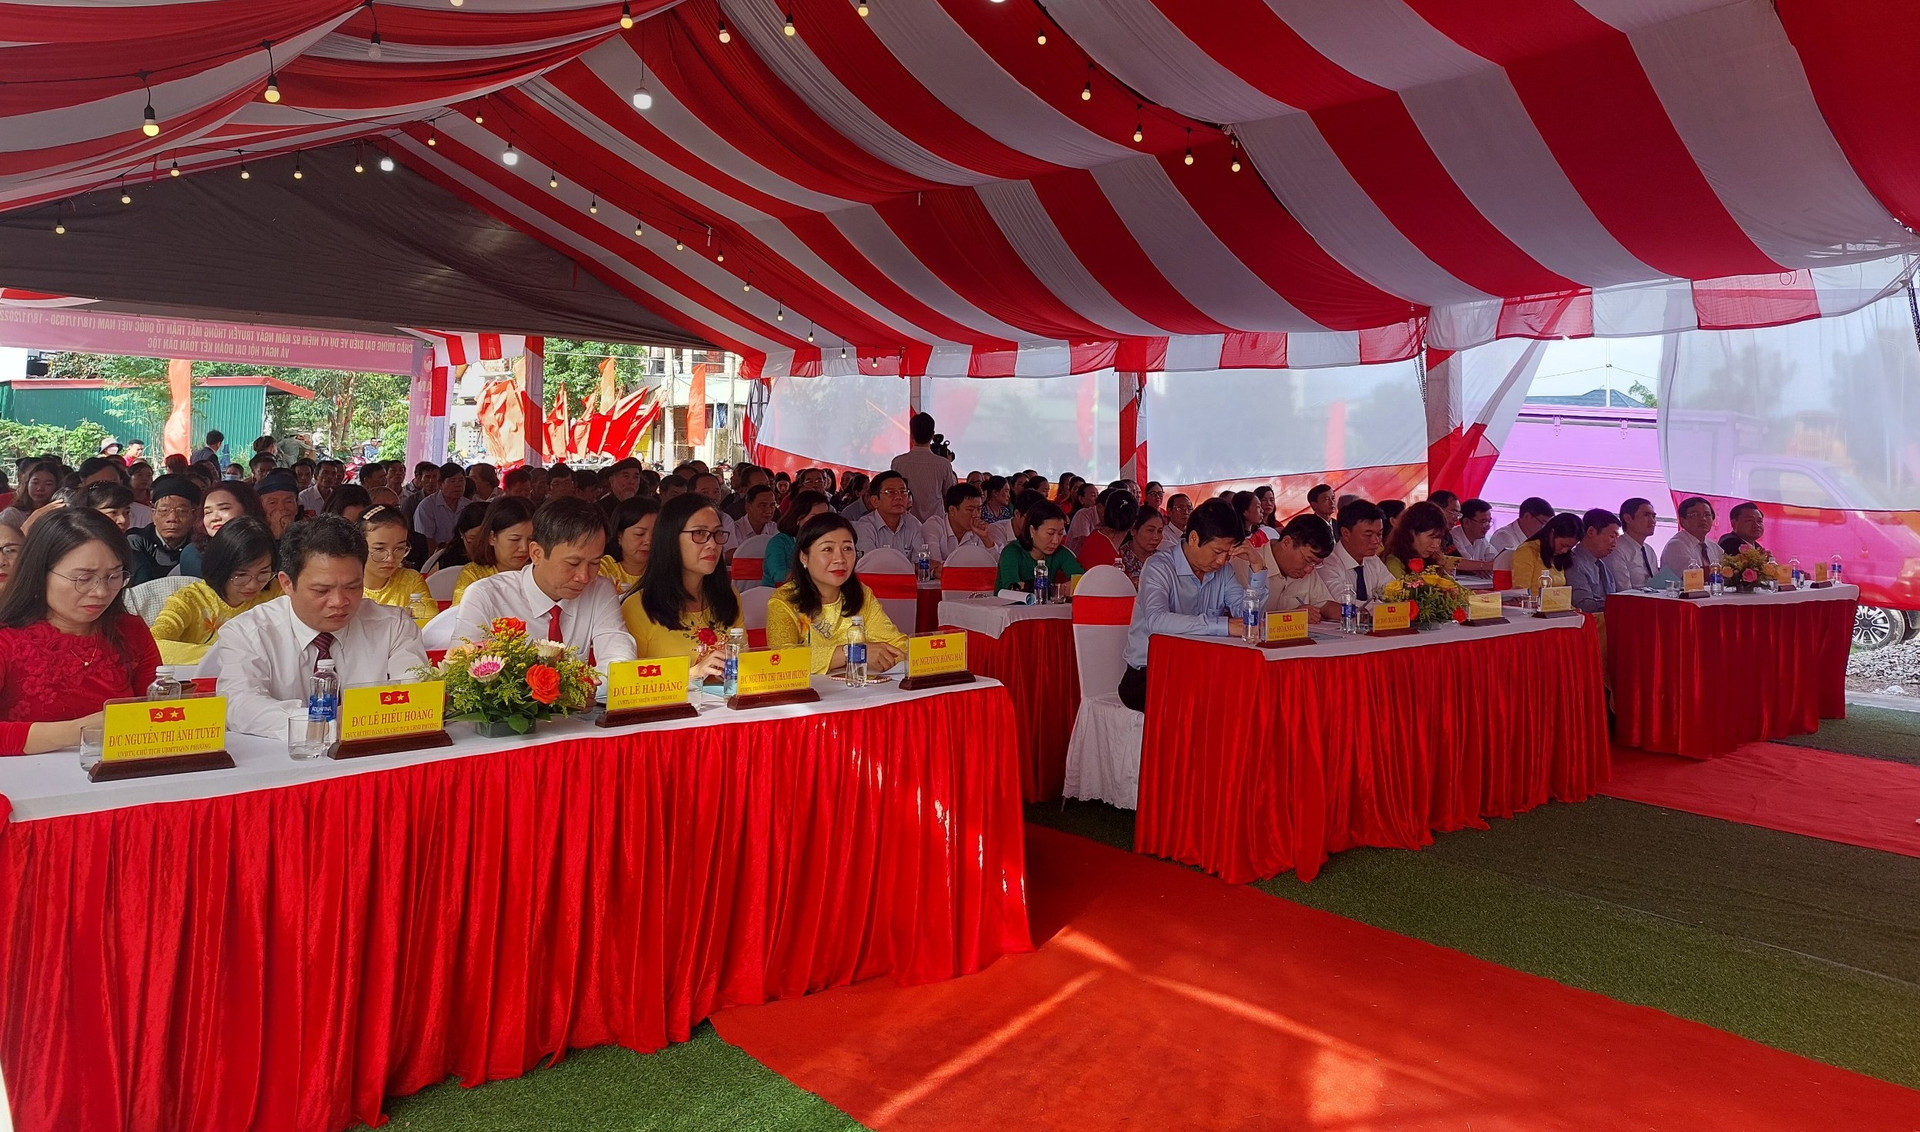 Lãnh đạo tỉnh Quảng Trị, lãnh đạo TP Đông Hà và đại diện lãnh đạo các sở, ban, ngành tại địa phương tới tham dự Ngày hội.